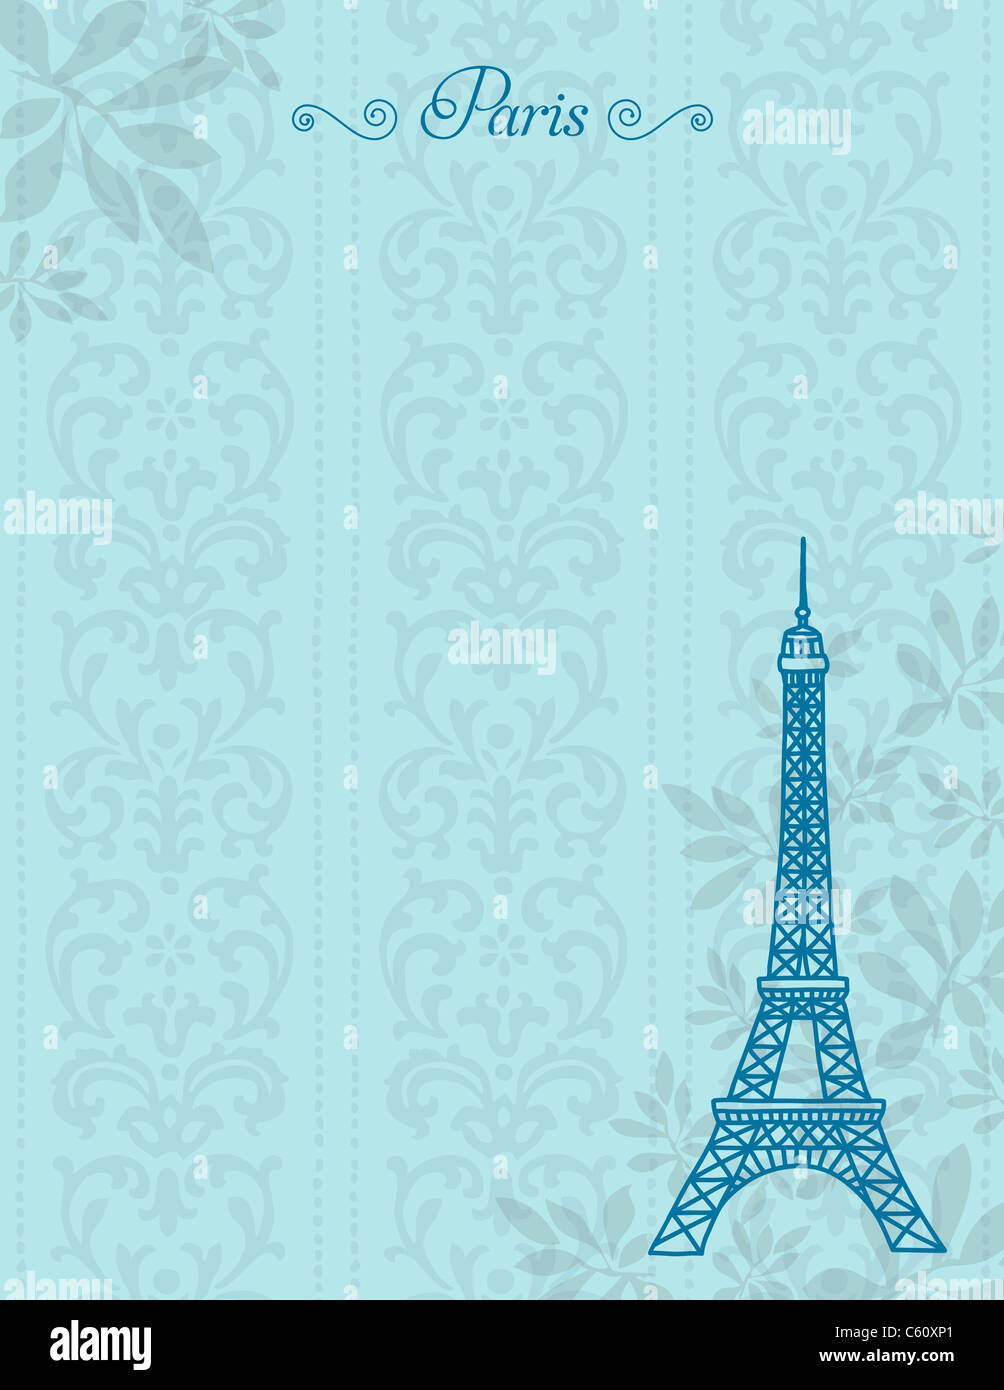 Eiffel Tower illustration Stock Photo